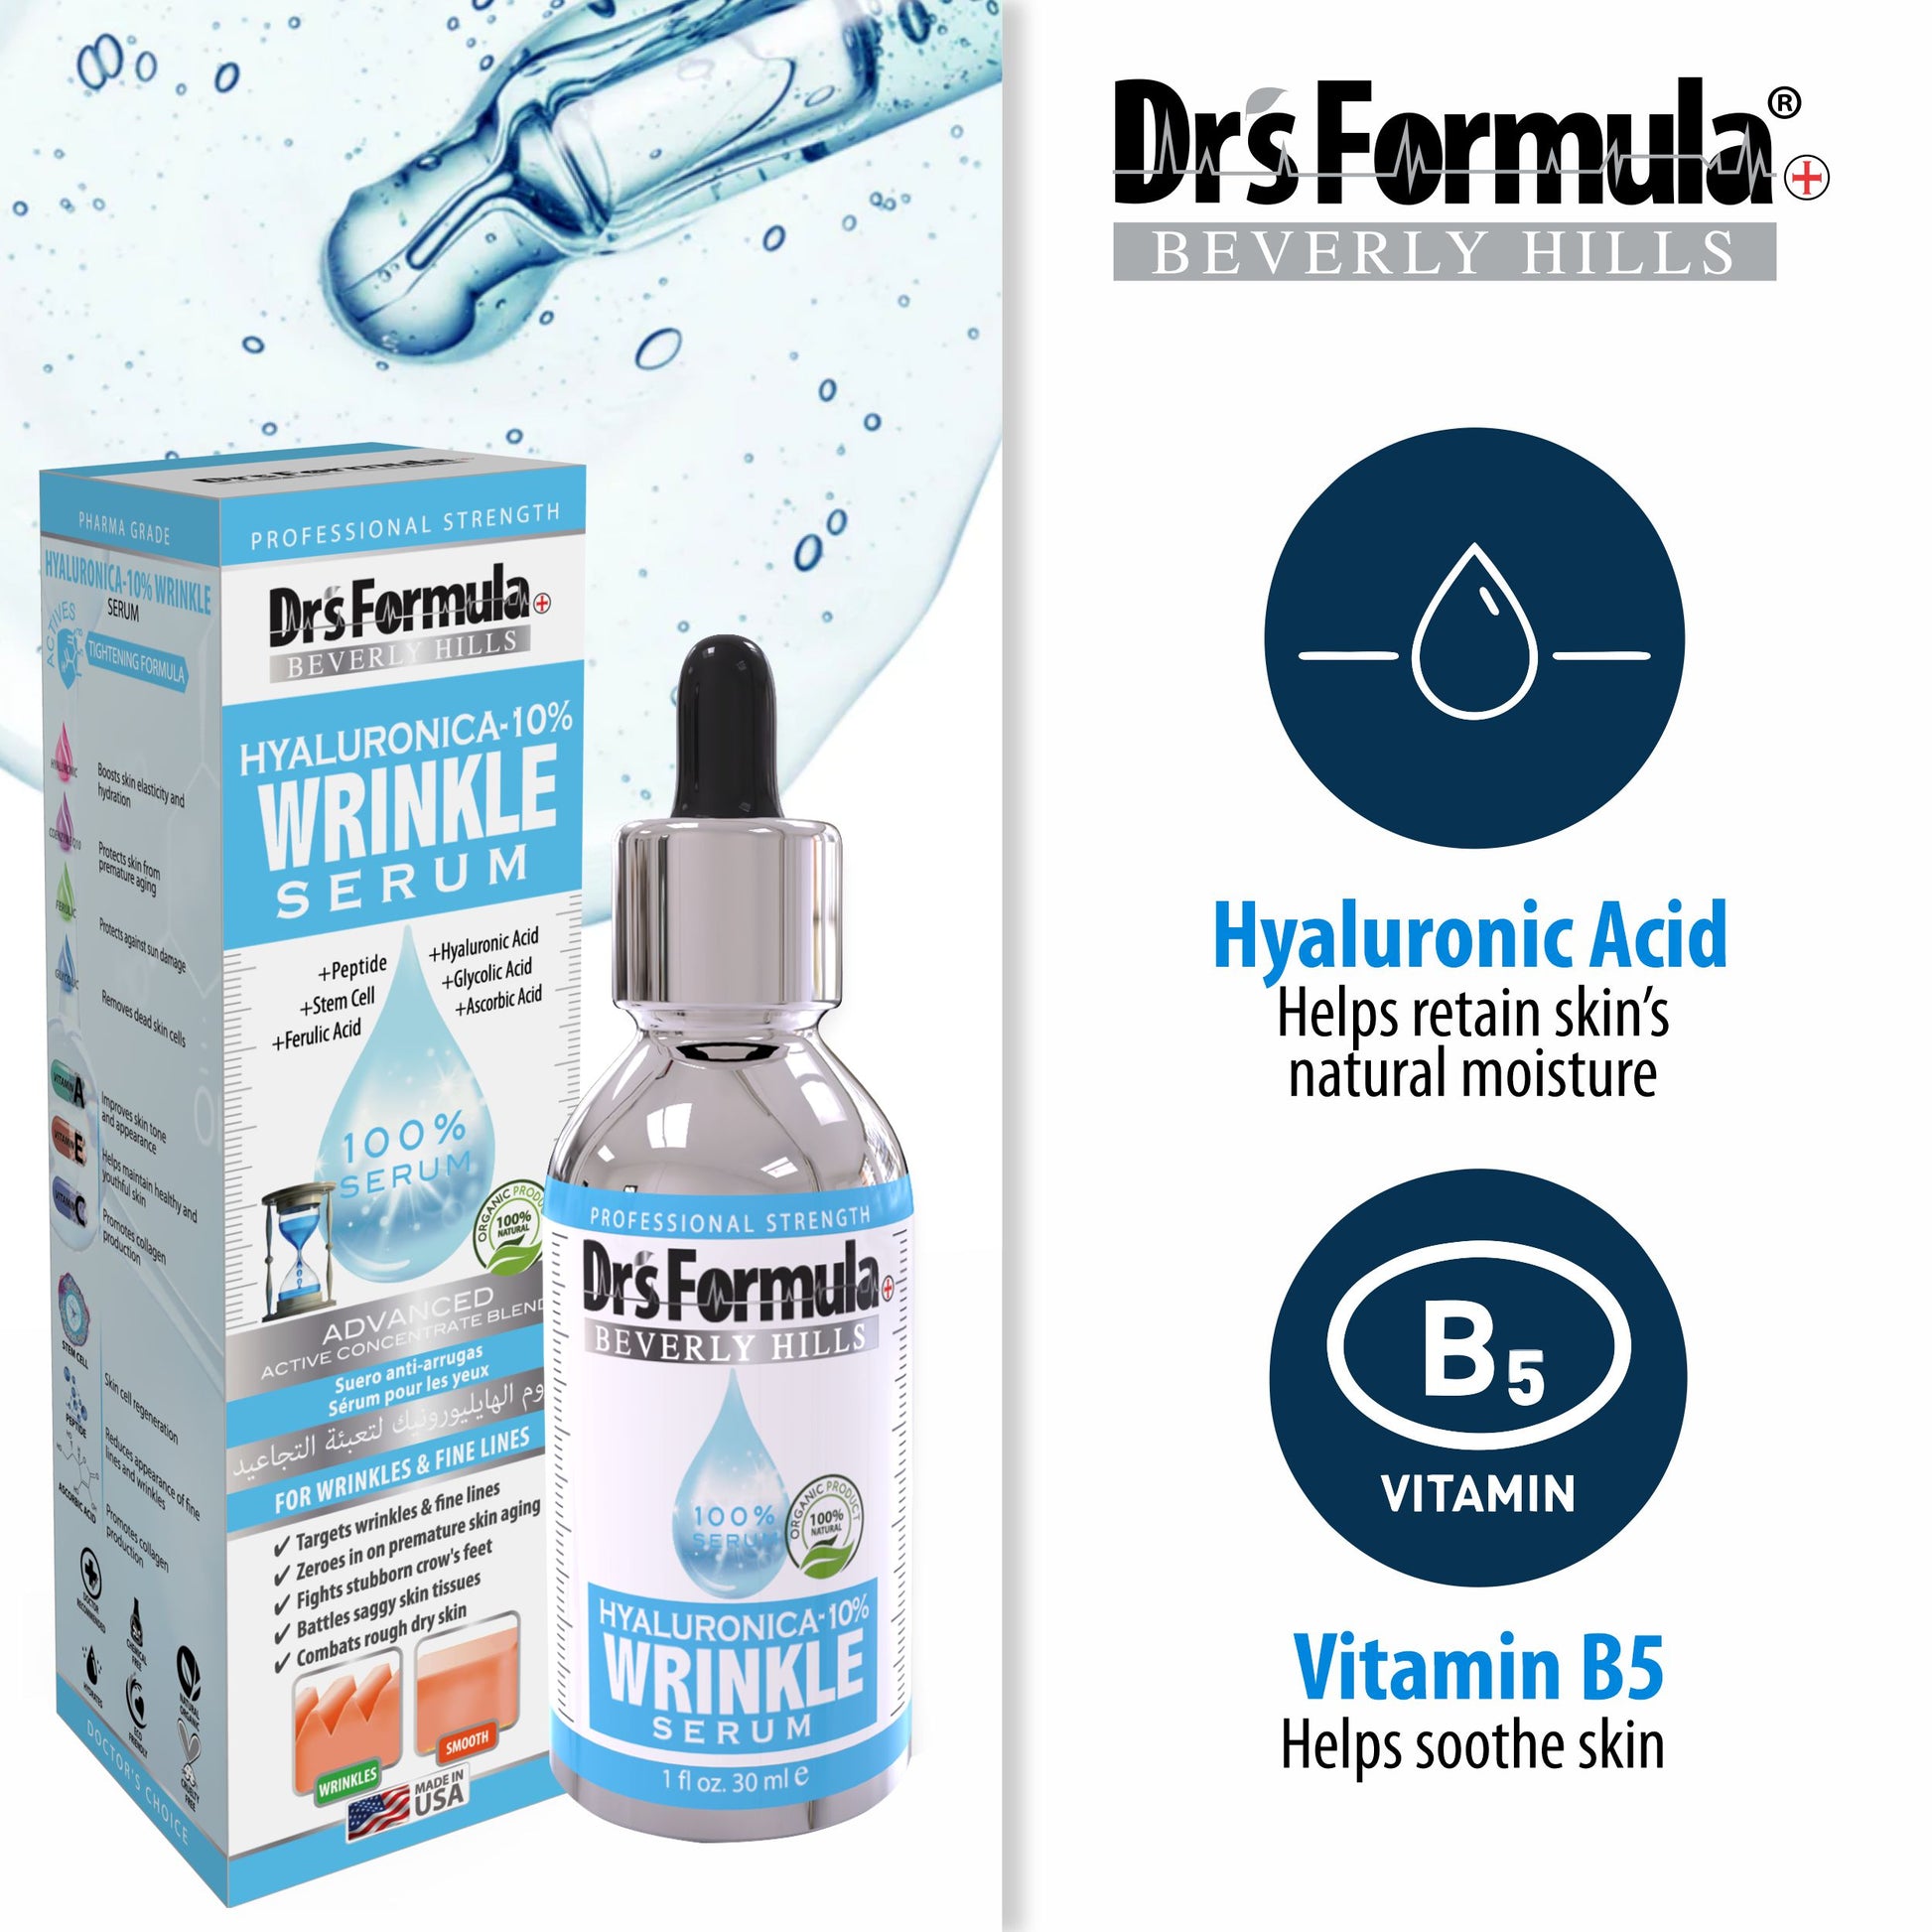 Hyaluronica-10% Wrinkle Serum